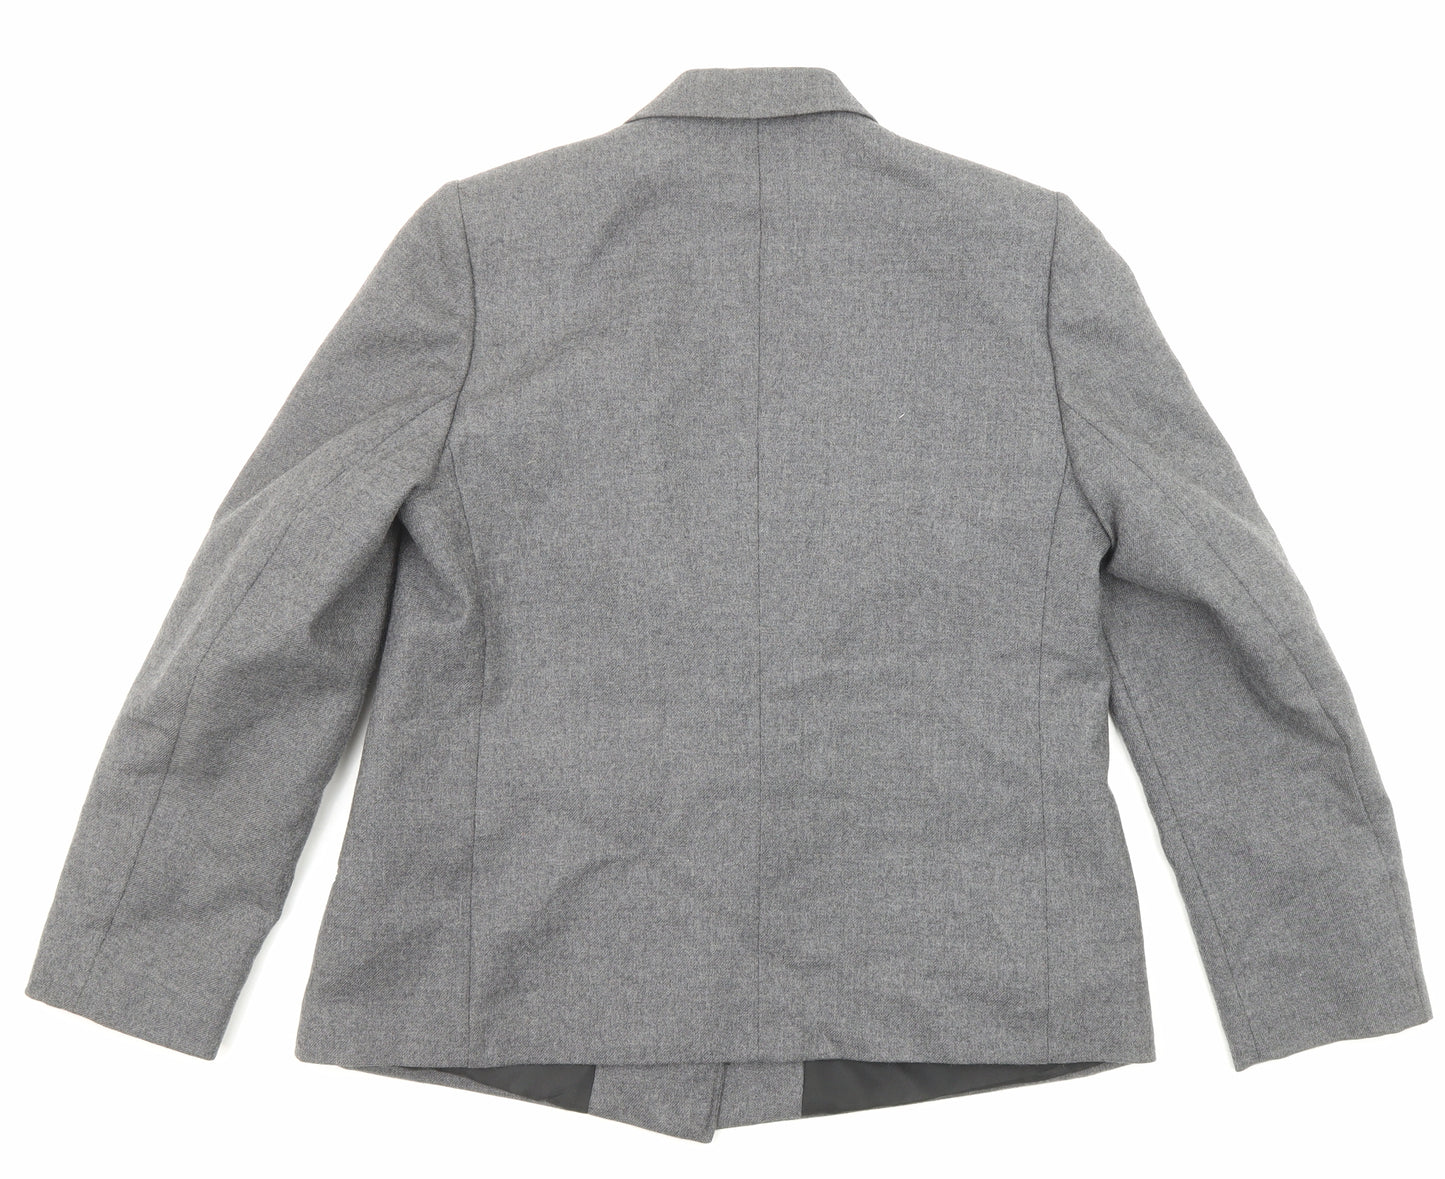 Gleneagles of Scotland Womens Grey Jacket Blazer Size 14 Button